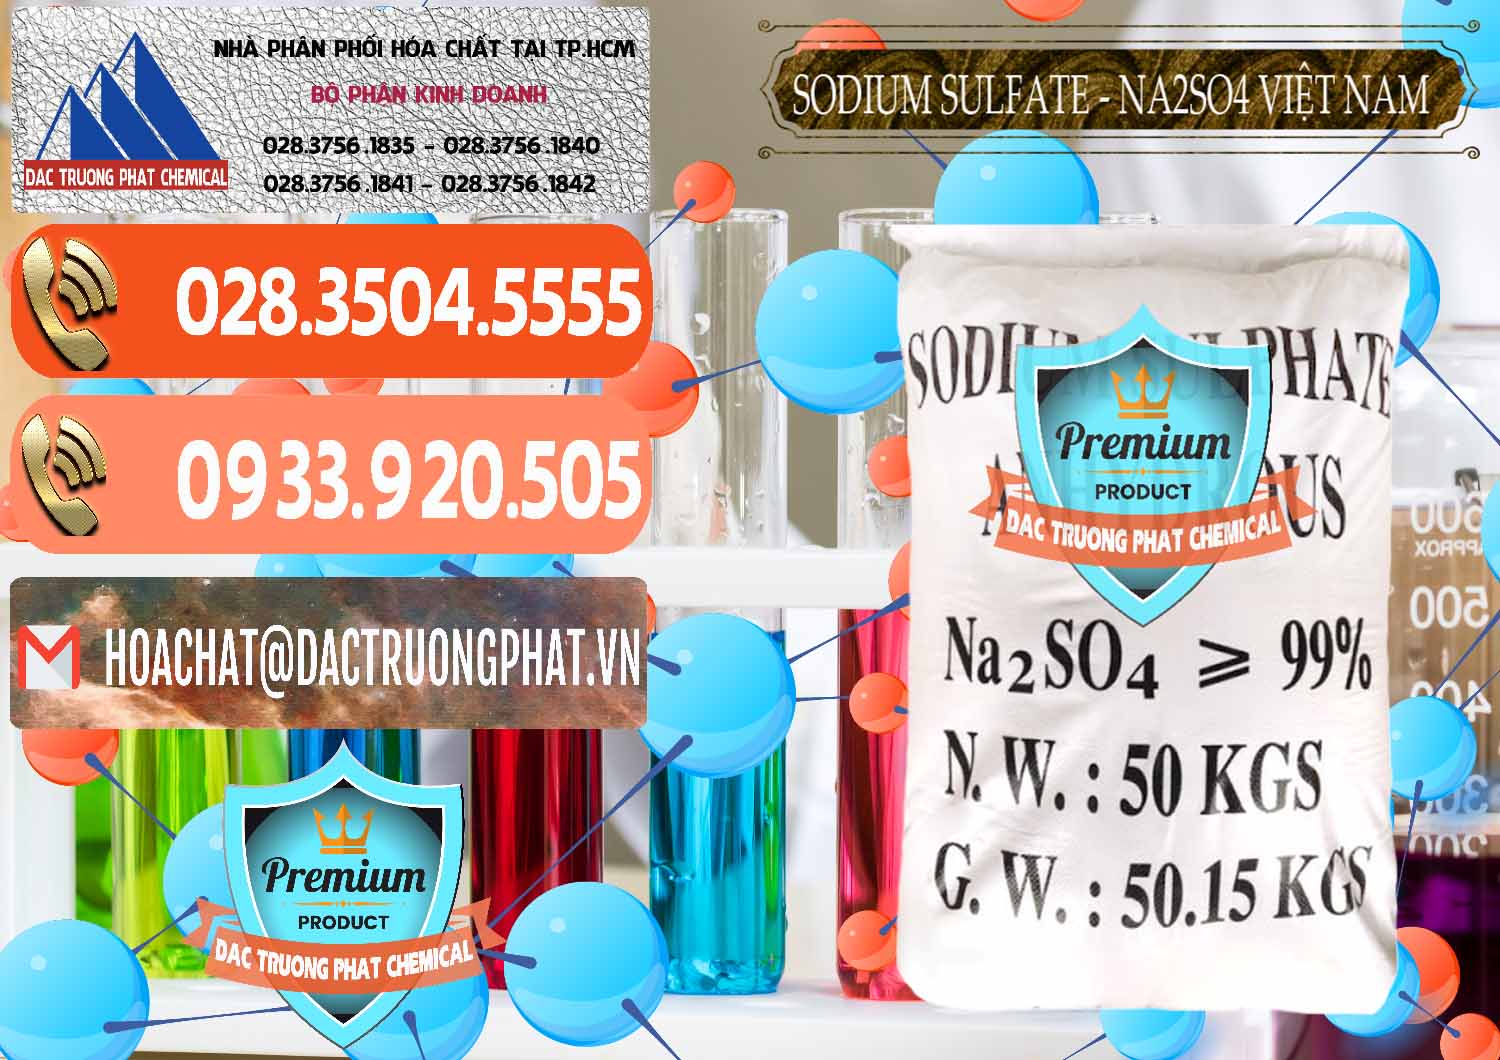 Công ty chuyên phân phối & bán Sodium Sulphate - Muối Sunfat Na2SO4 Việt Nam - 0355 - Công ty phân phối ( bán ) hóa chất tại TP.HCM - hoachatmientay.com